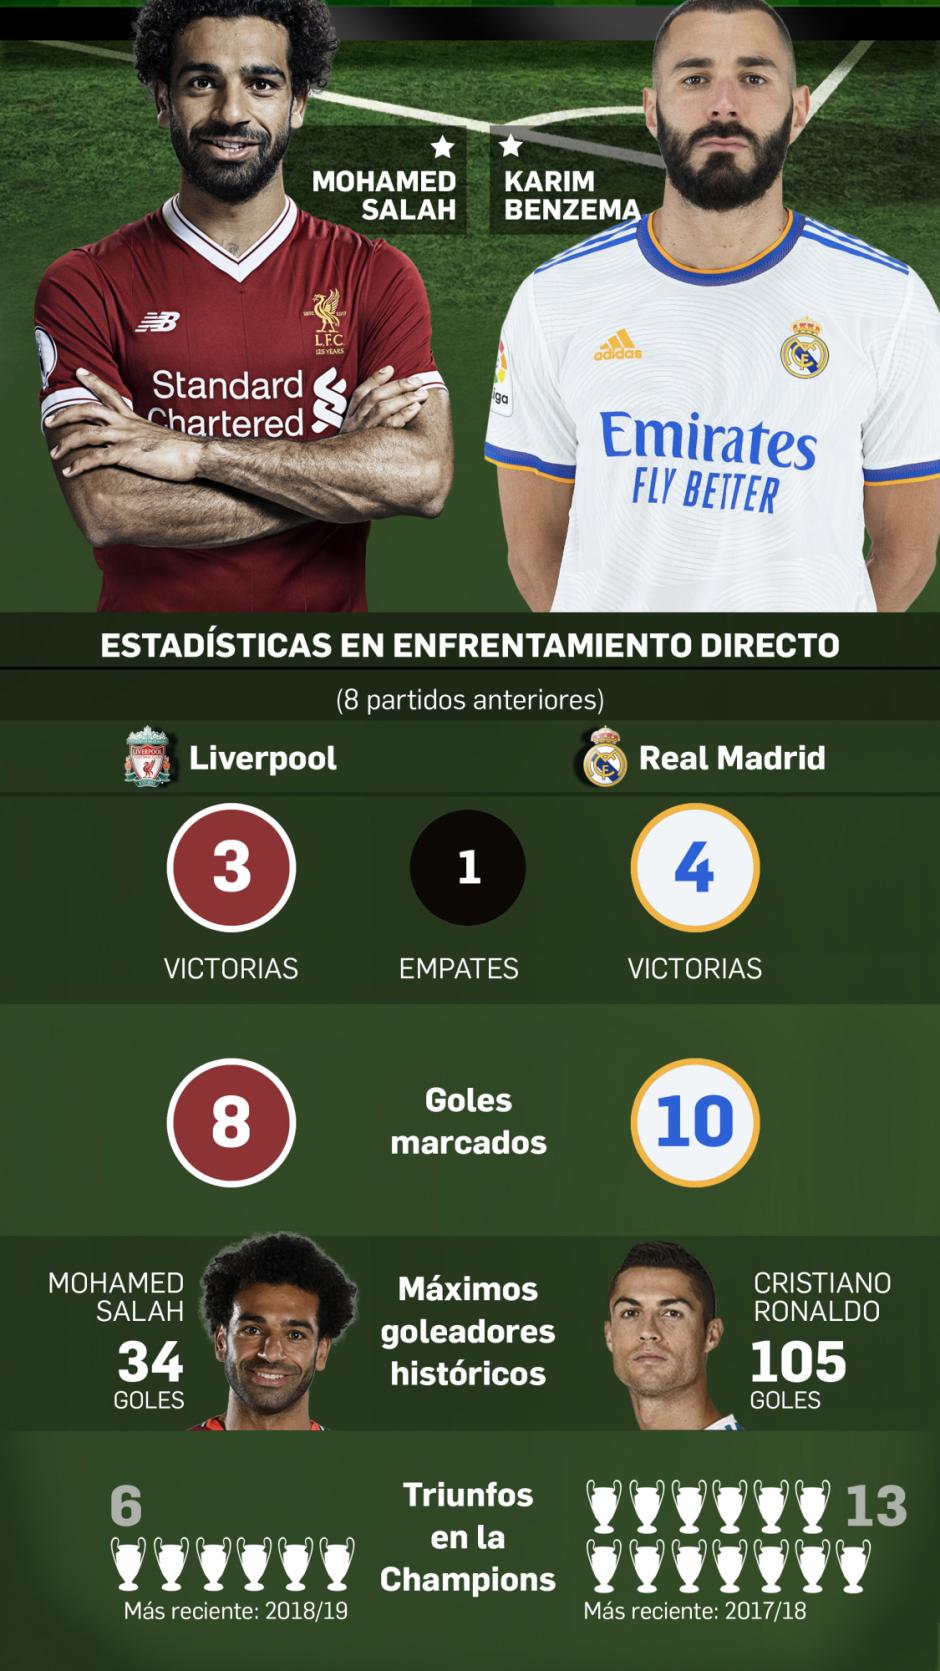 Salah y Benzema serán dos de las estrellas que más focos acaparen durante la final de la Champions